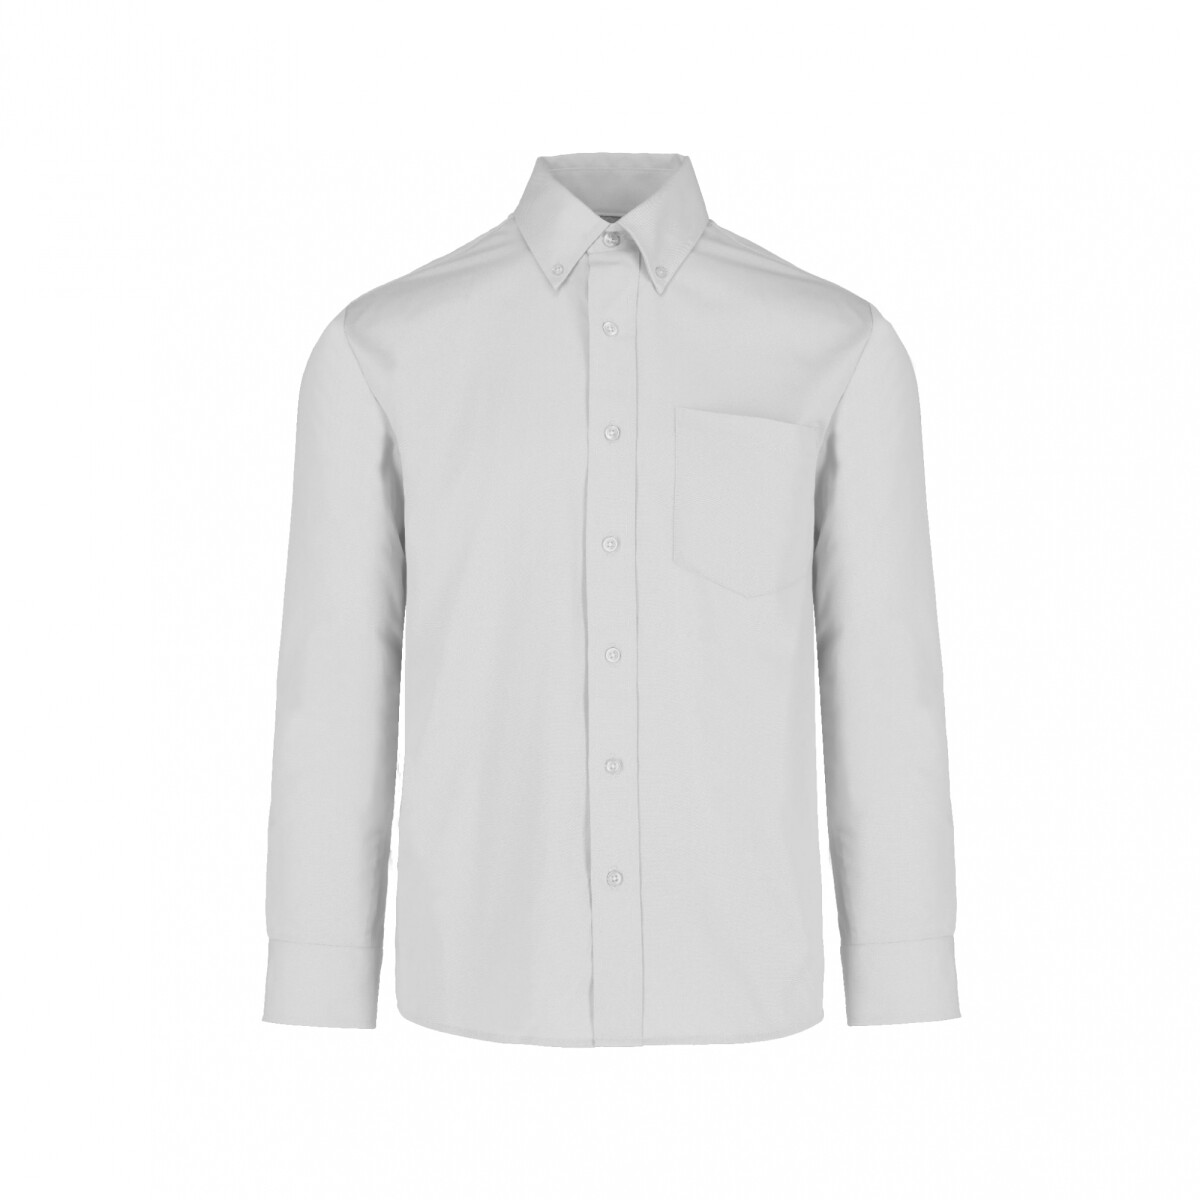 Camisa gabardina manga larga - Blanco 